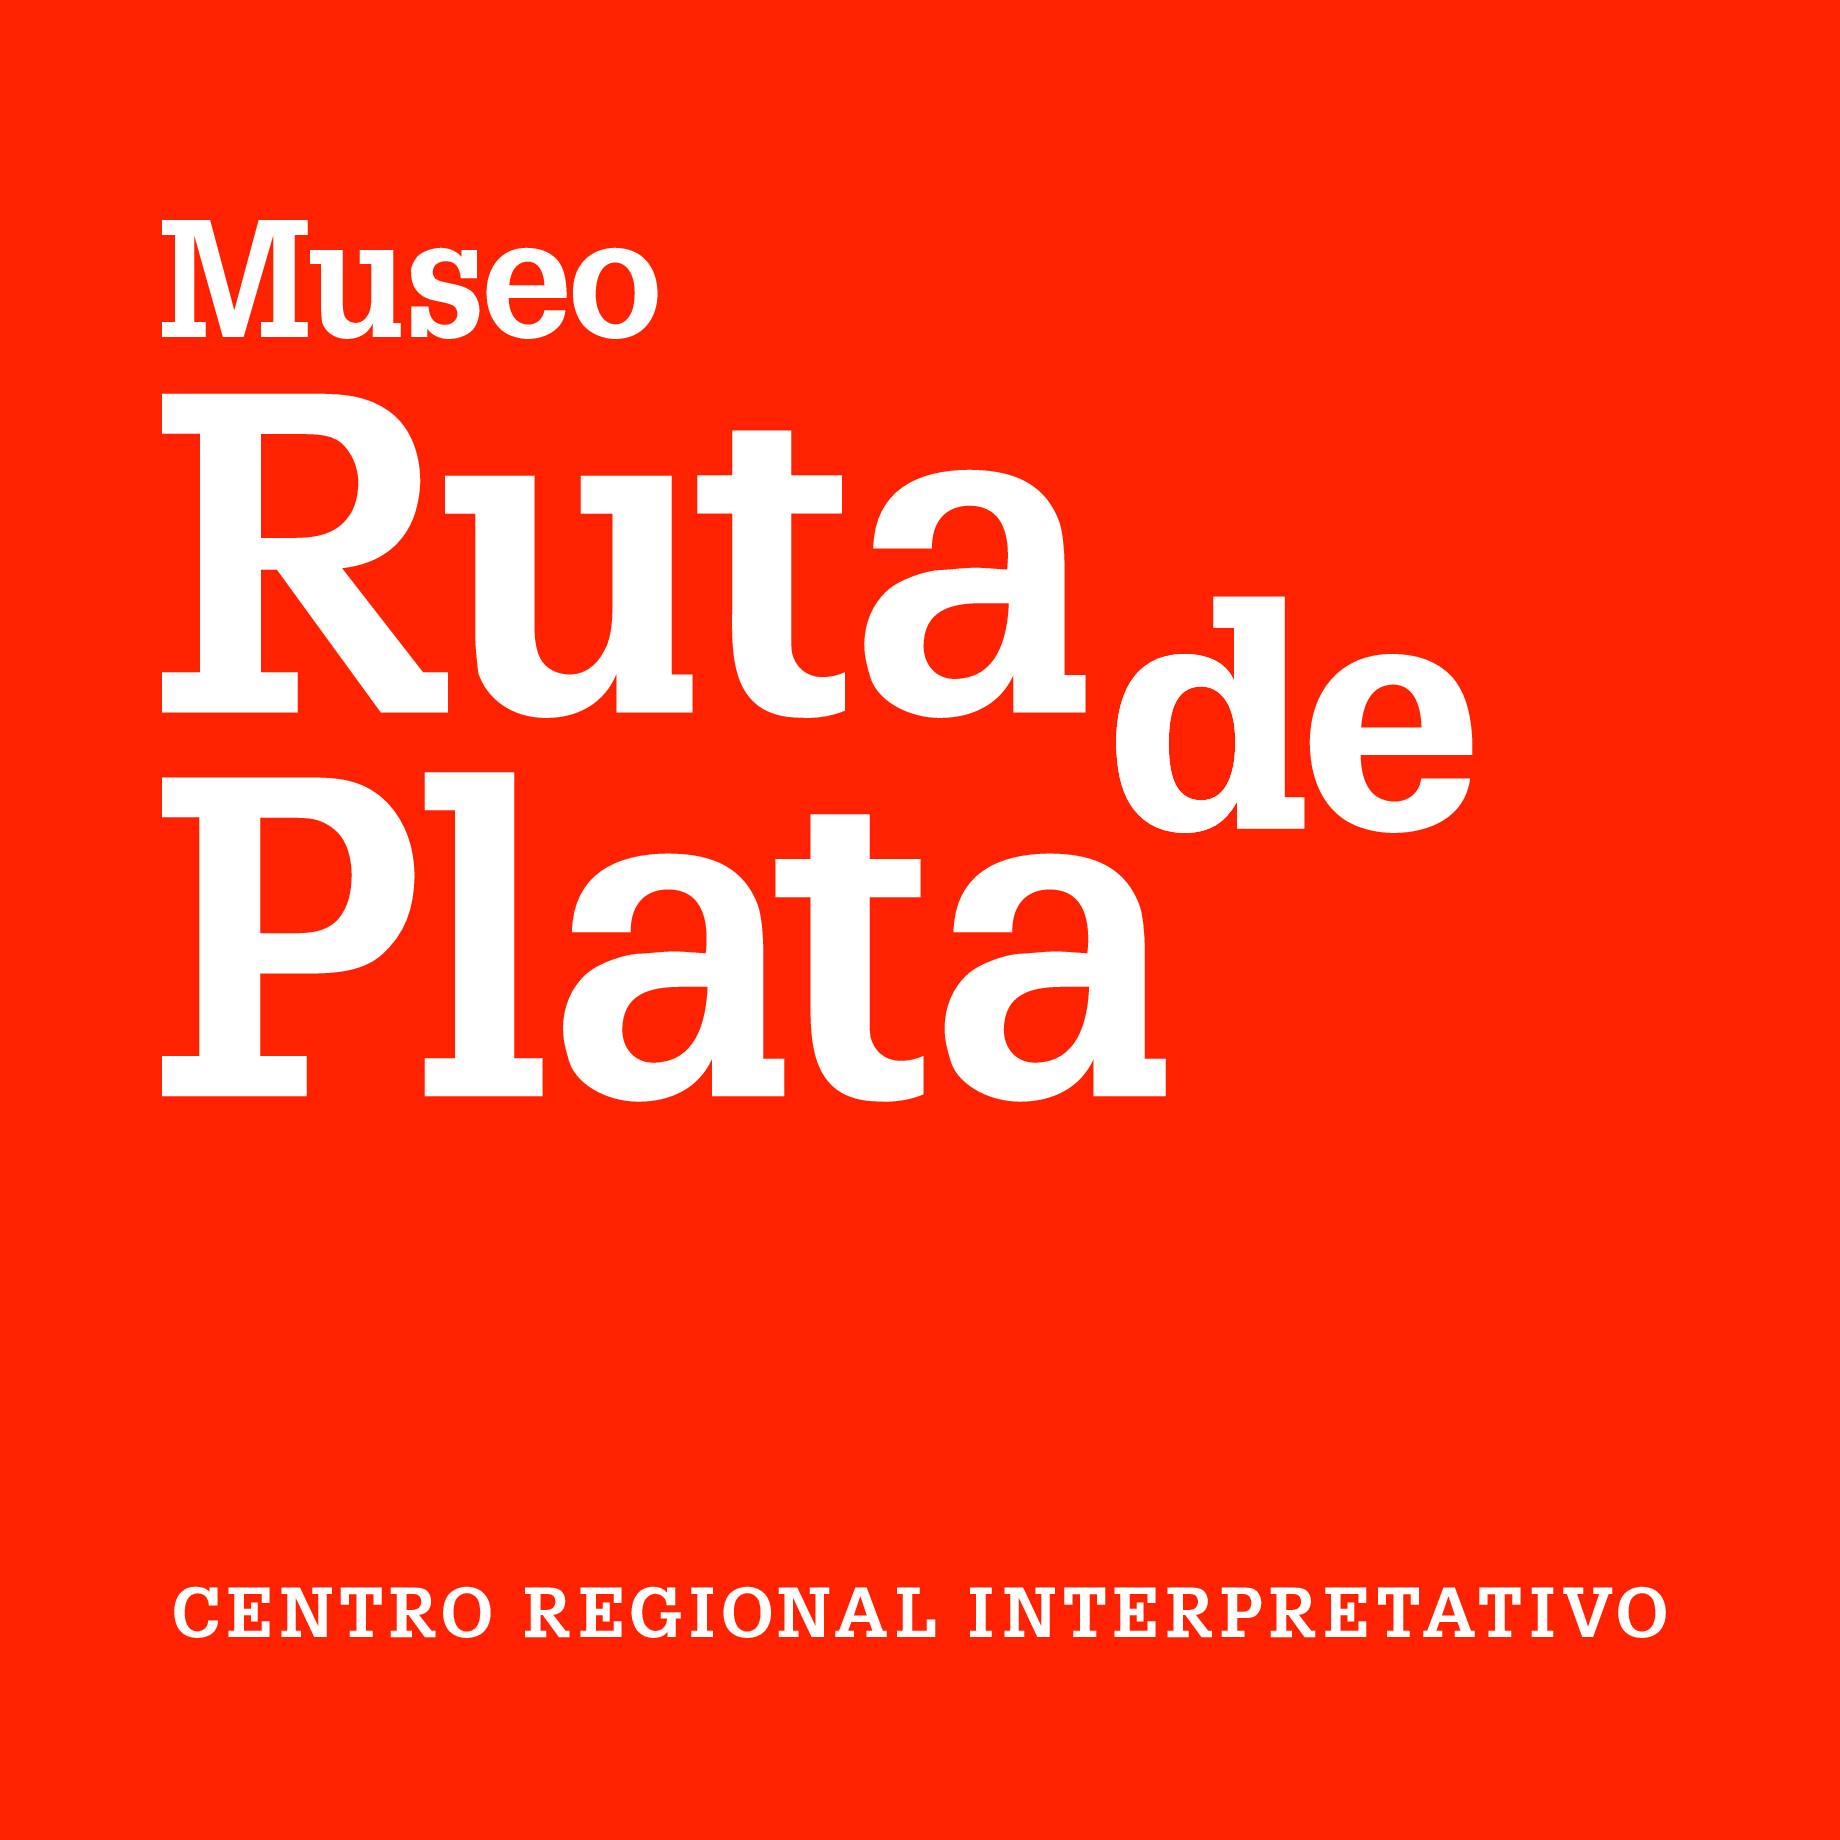 Museo Ruta de Plata